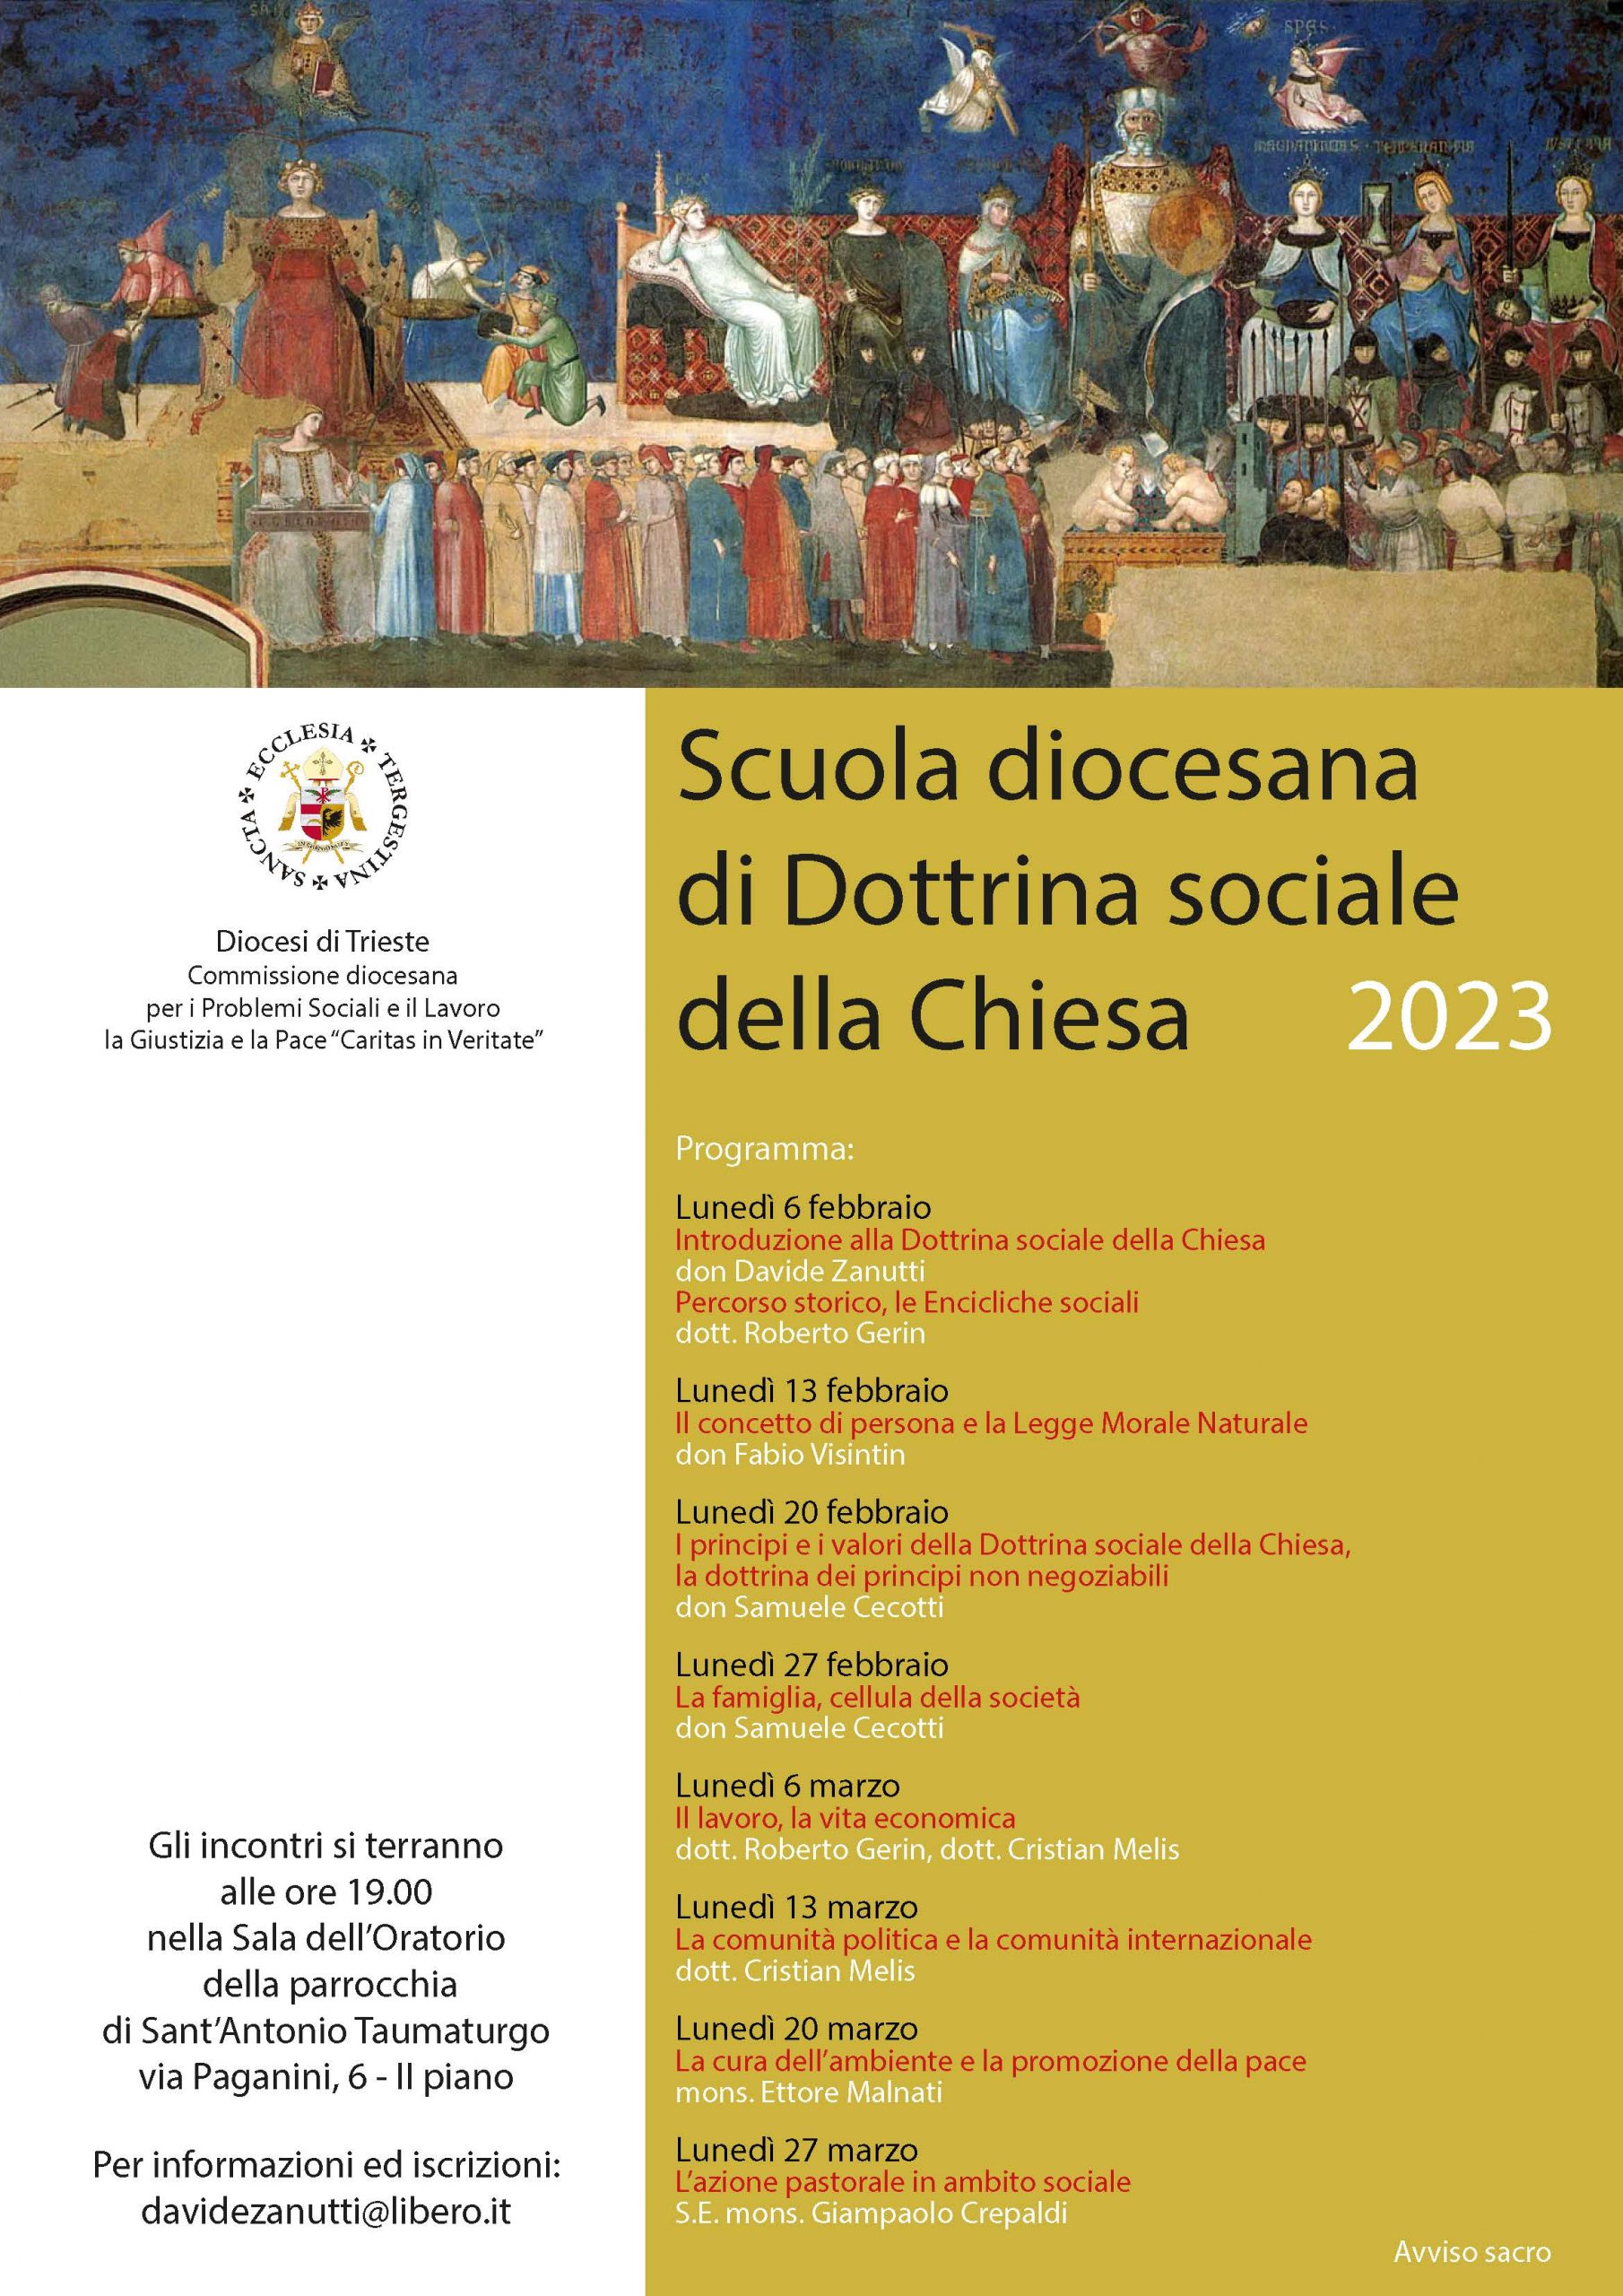 Scuola diocesana di Dottrina sociale della Chiesa